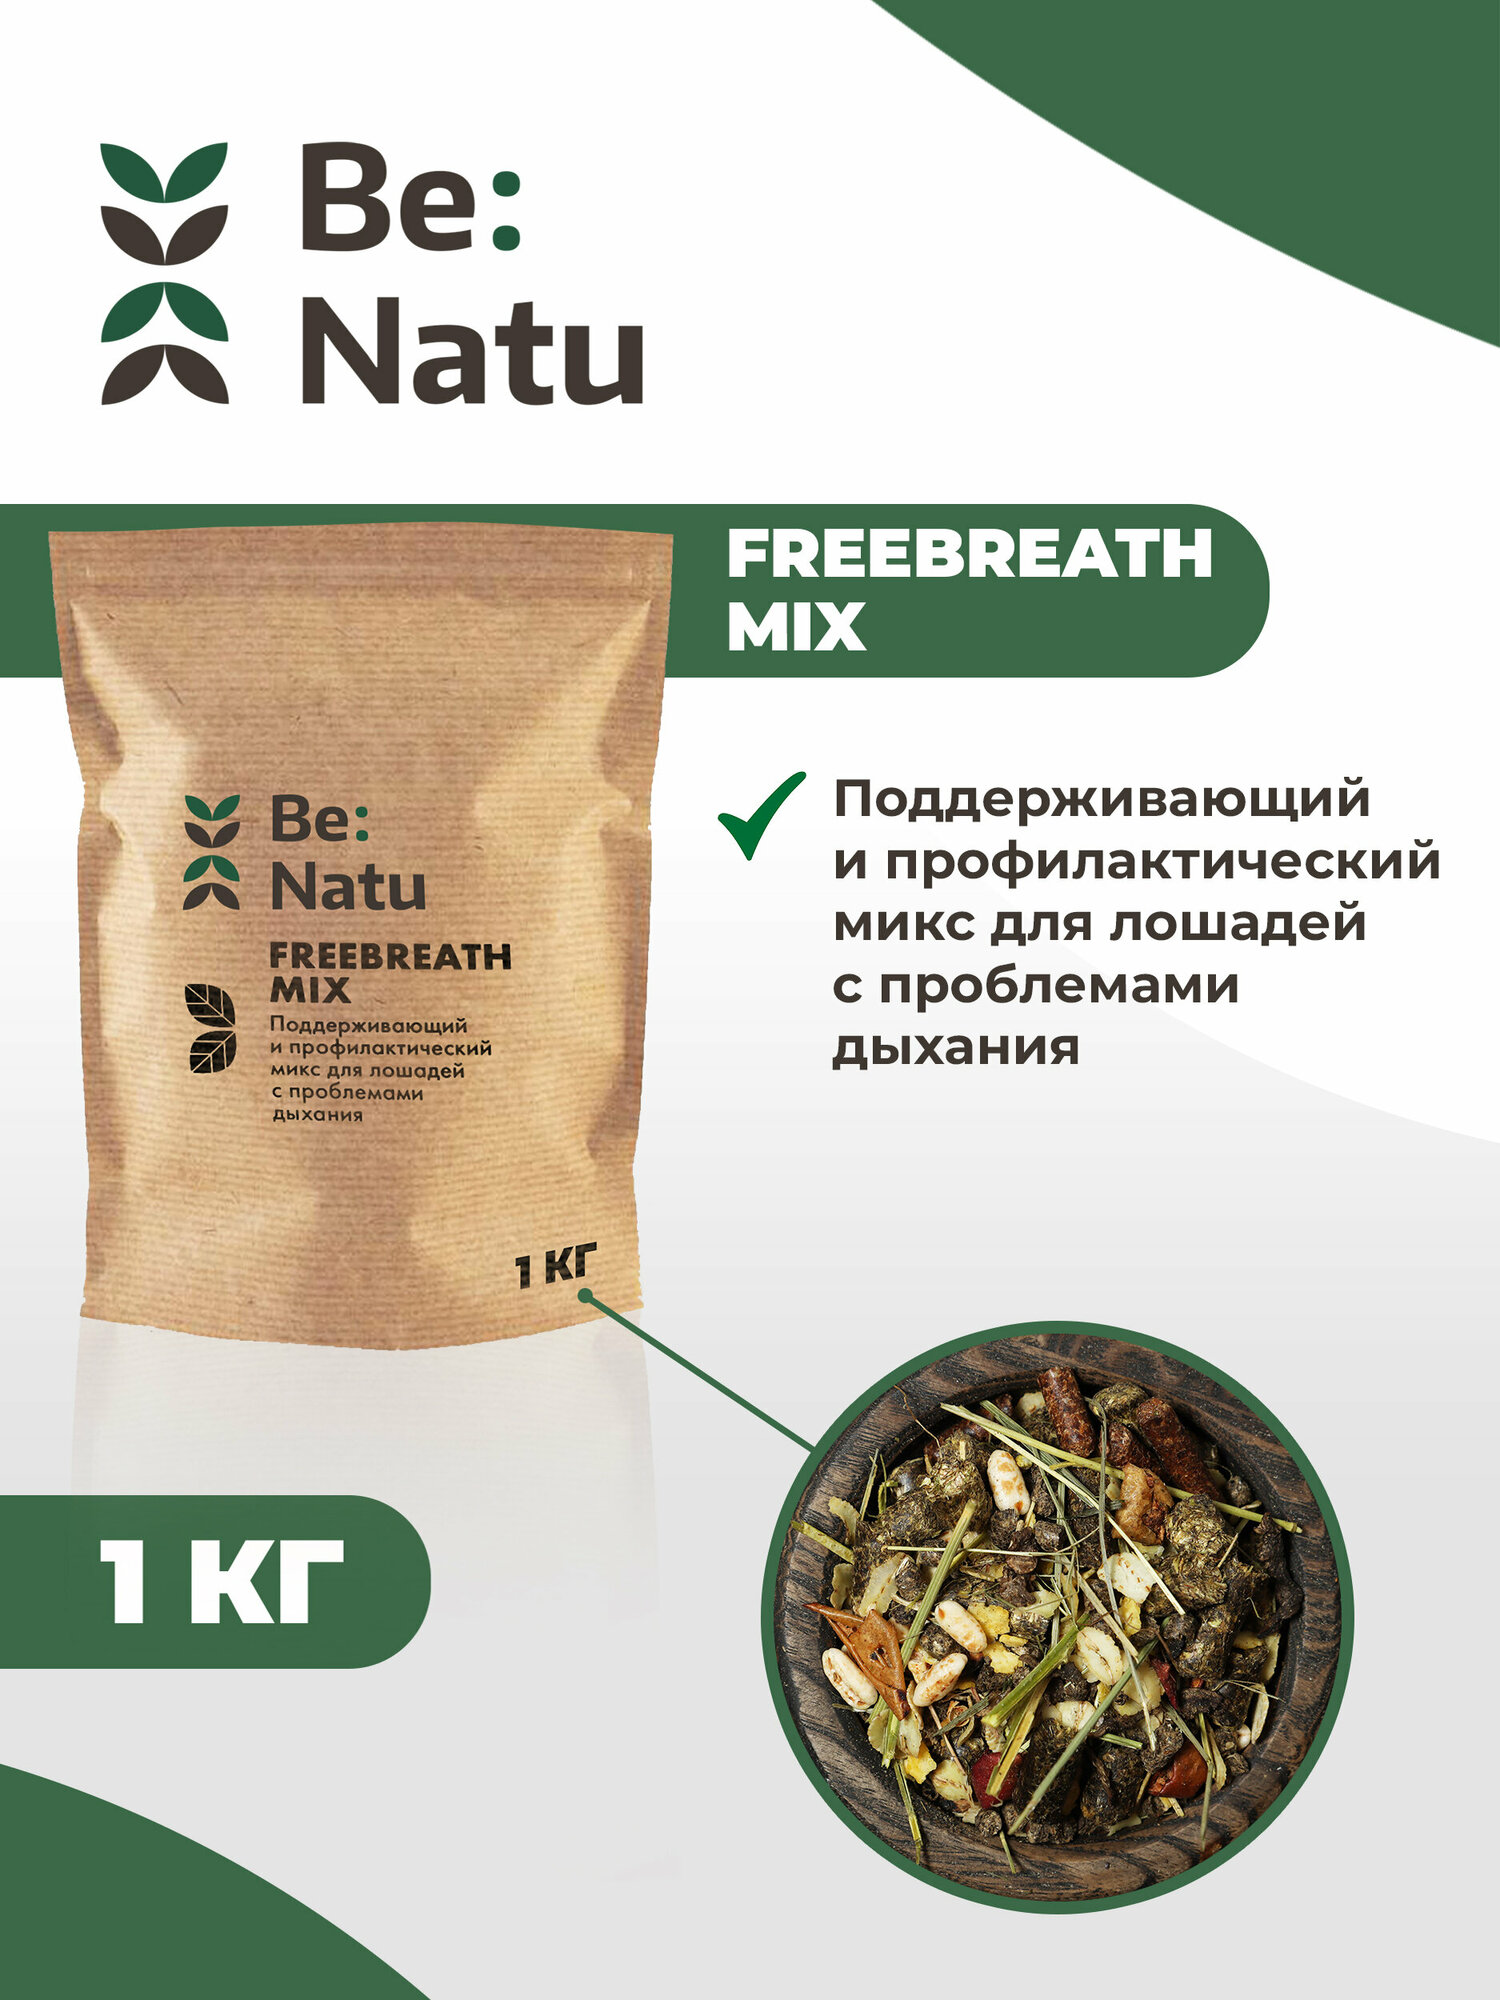 Be: Natu FreeBreath mix 1 кг Корм для лошадей с проблемами дыхания